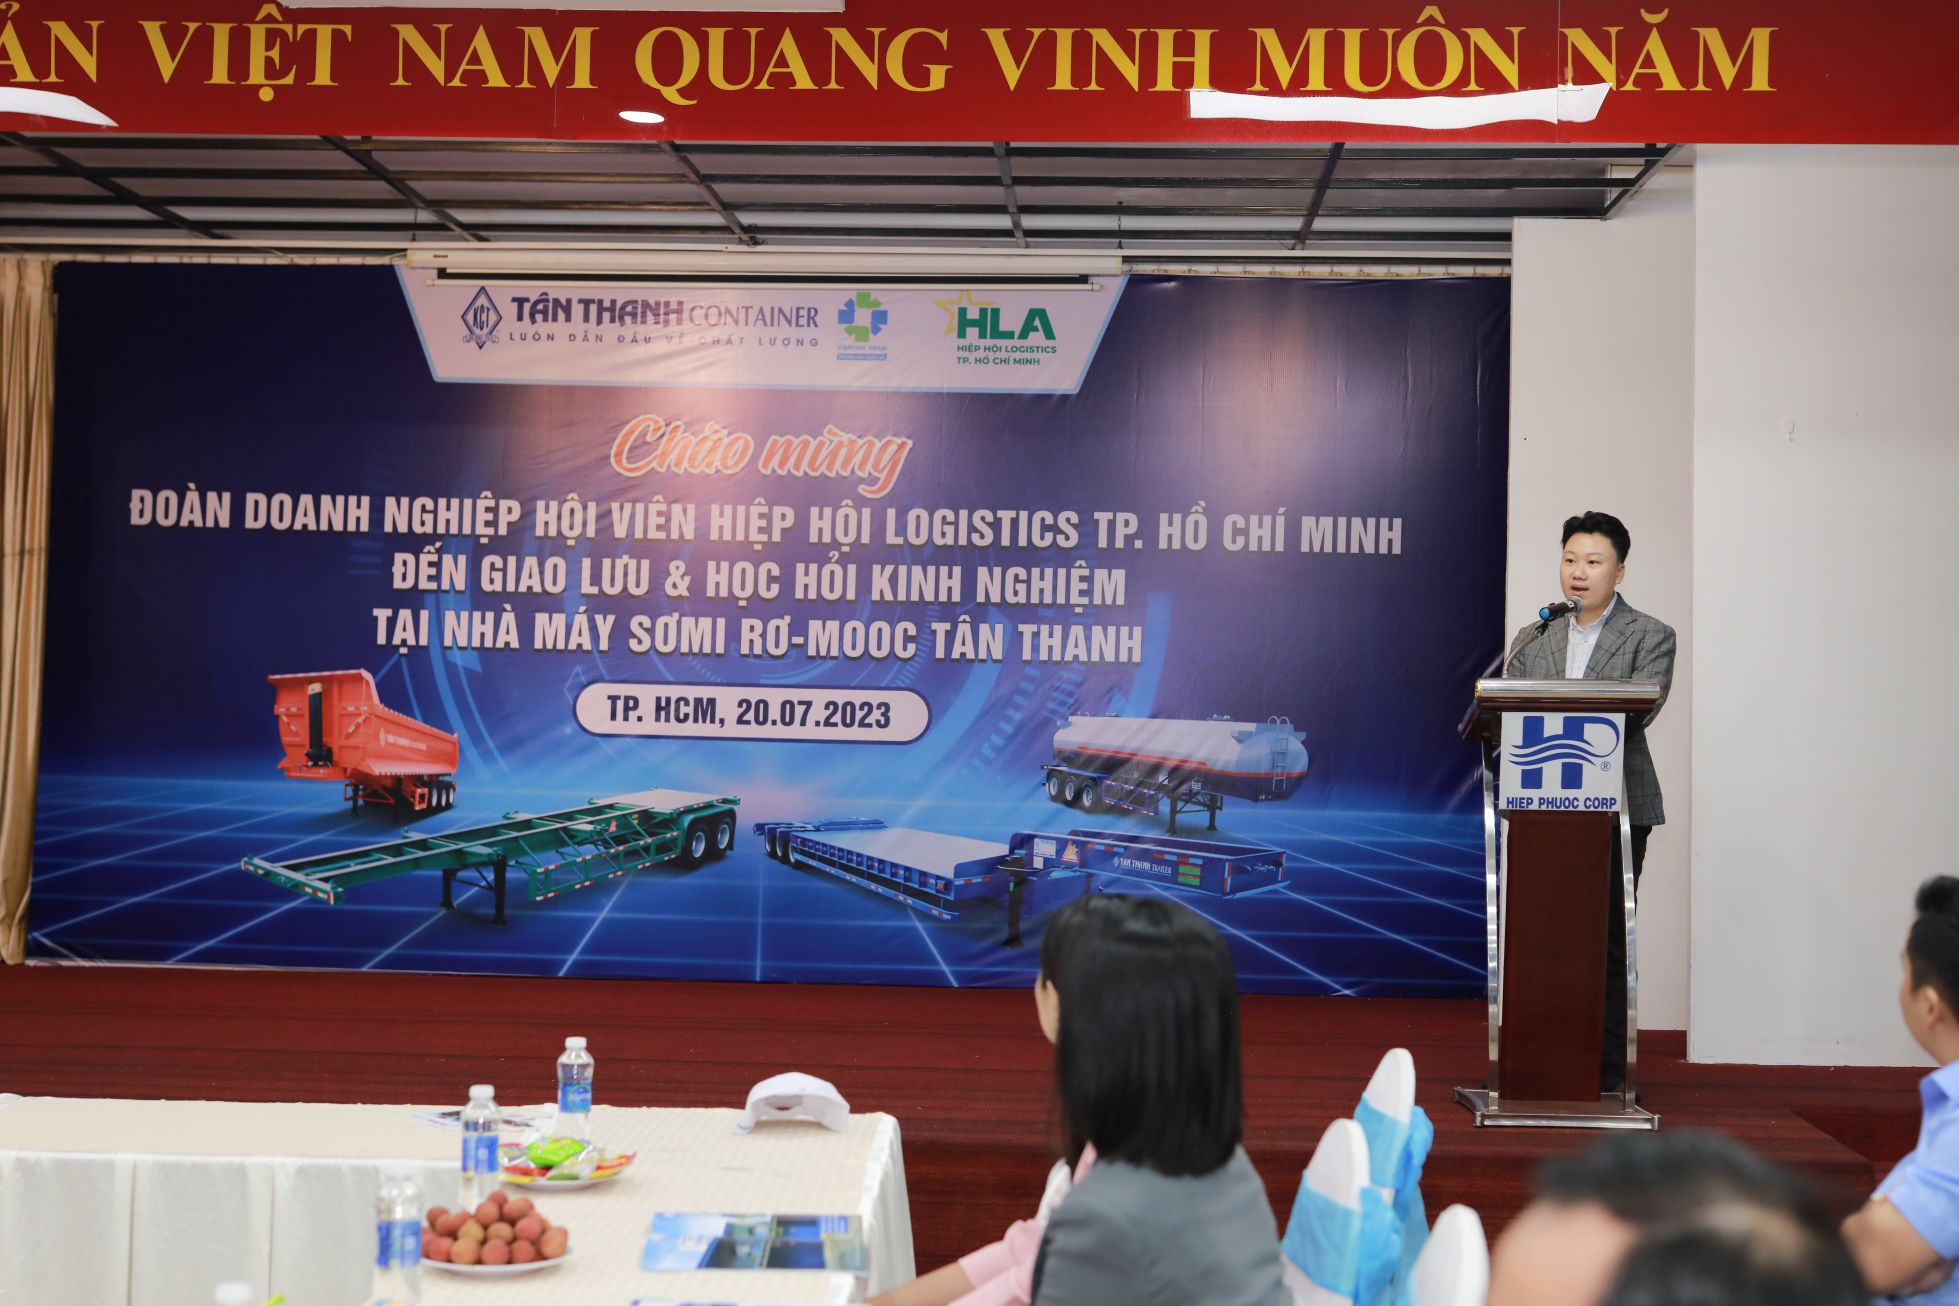 Hội viên Hiệp hội Logistic TP. Hồ Chí Minh đến giao lưu & học hỏi kinh nghiệm tại nhà máy sản xuất Sơmi Rơ-mooc Tân Thanh